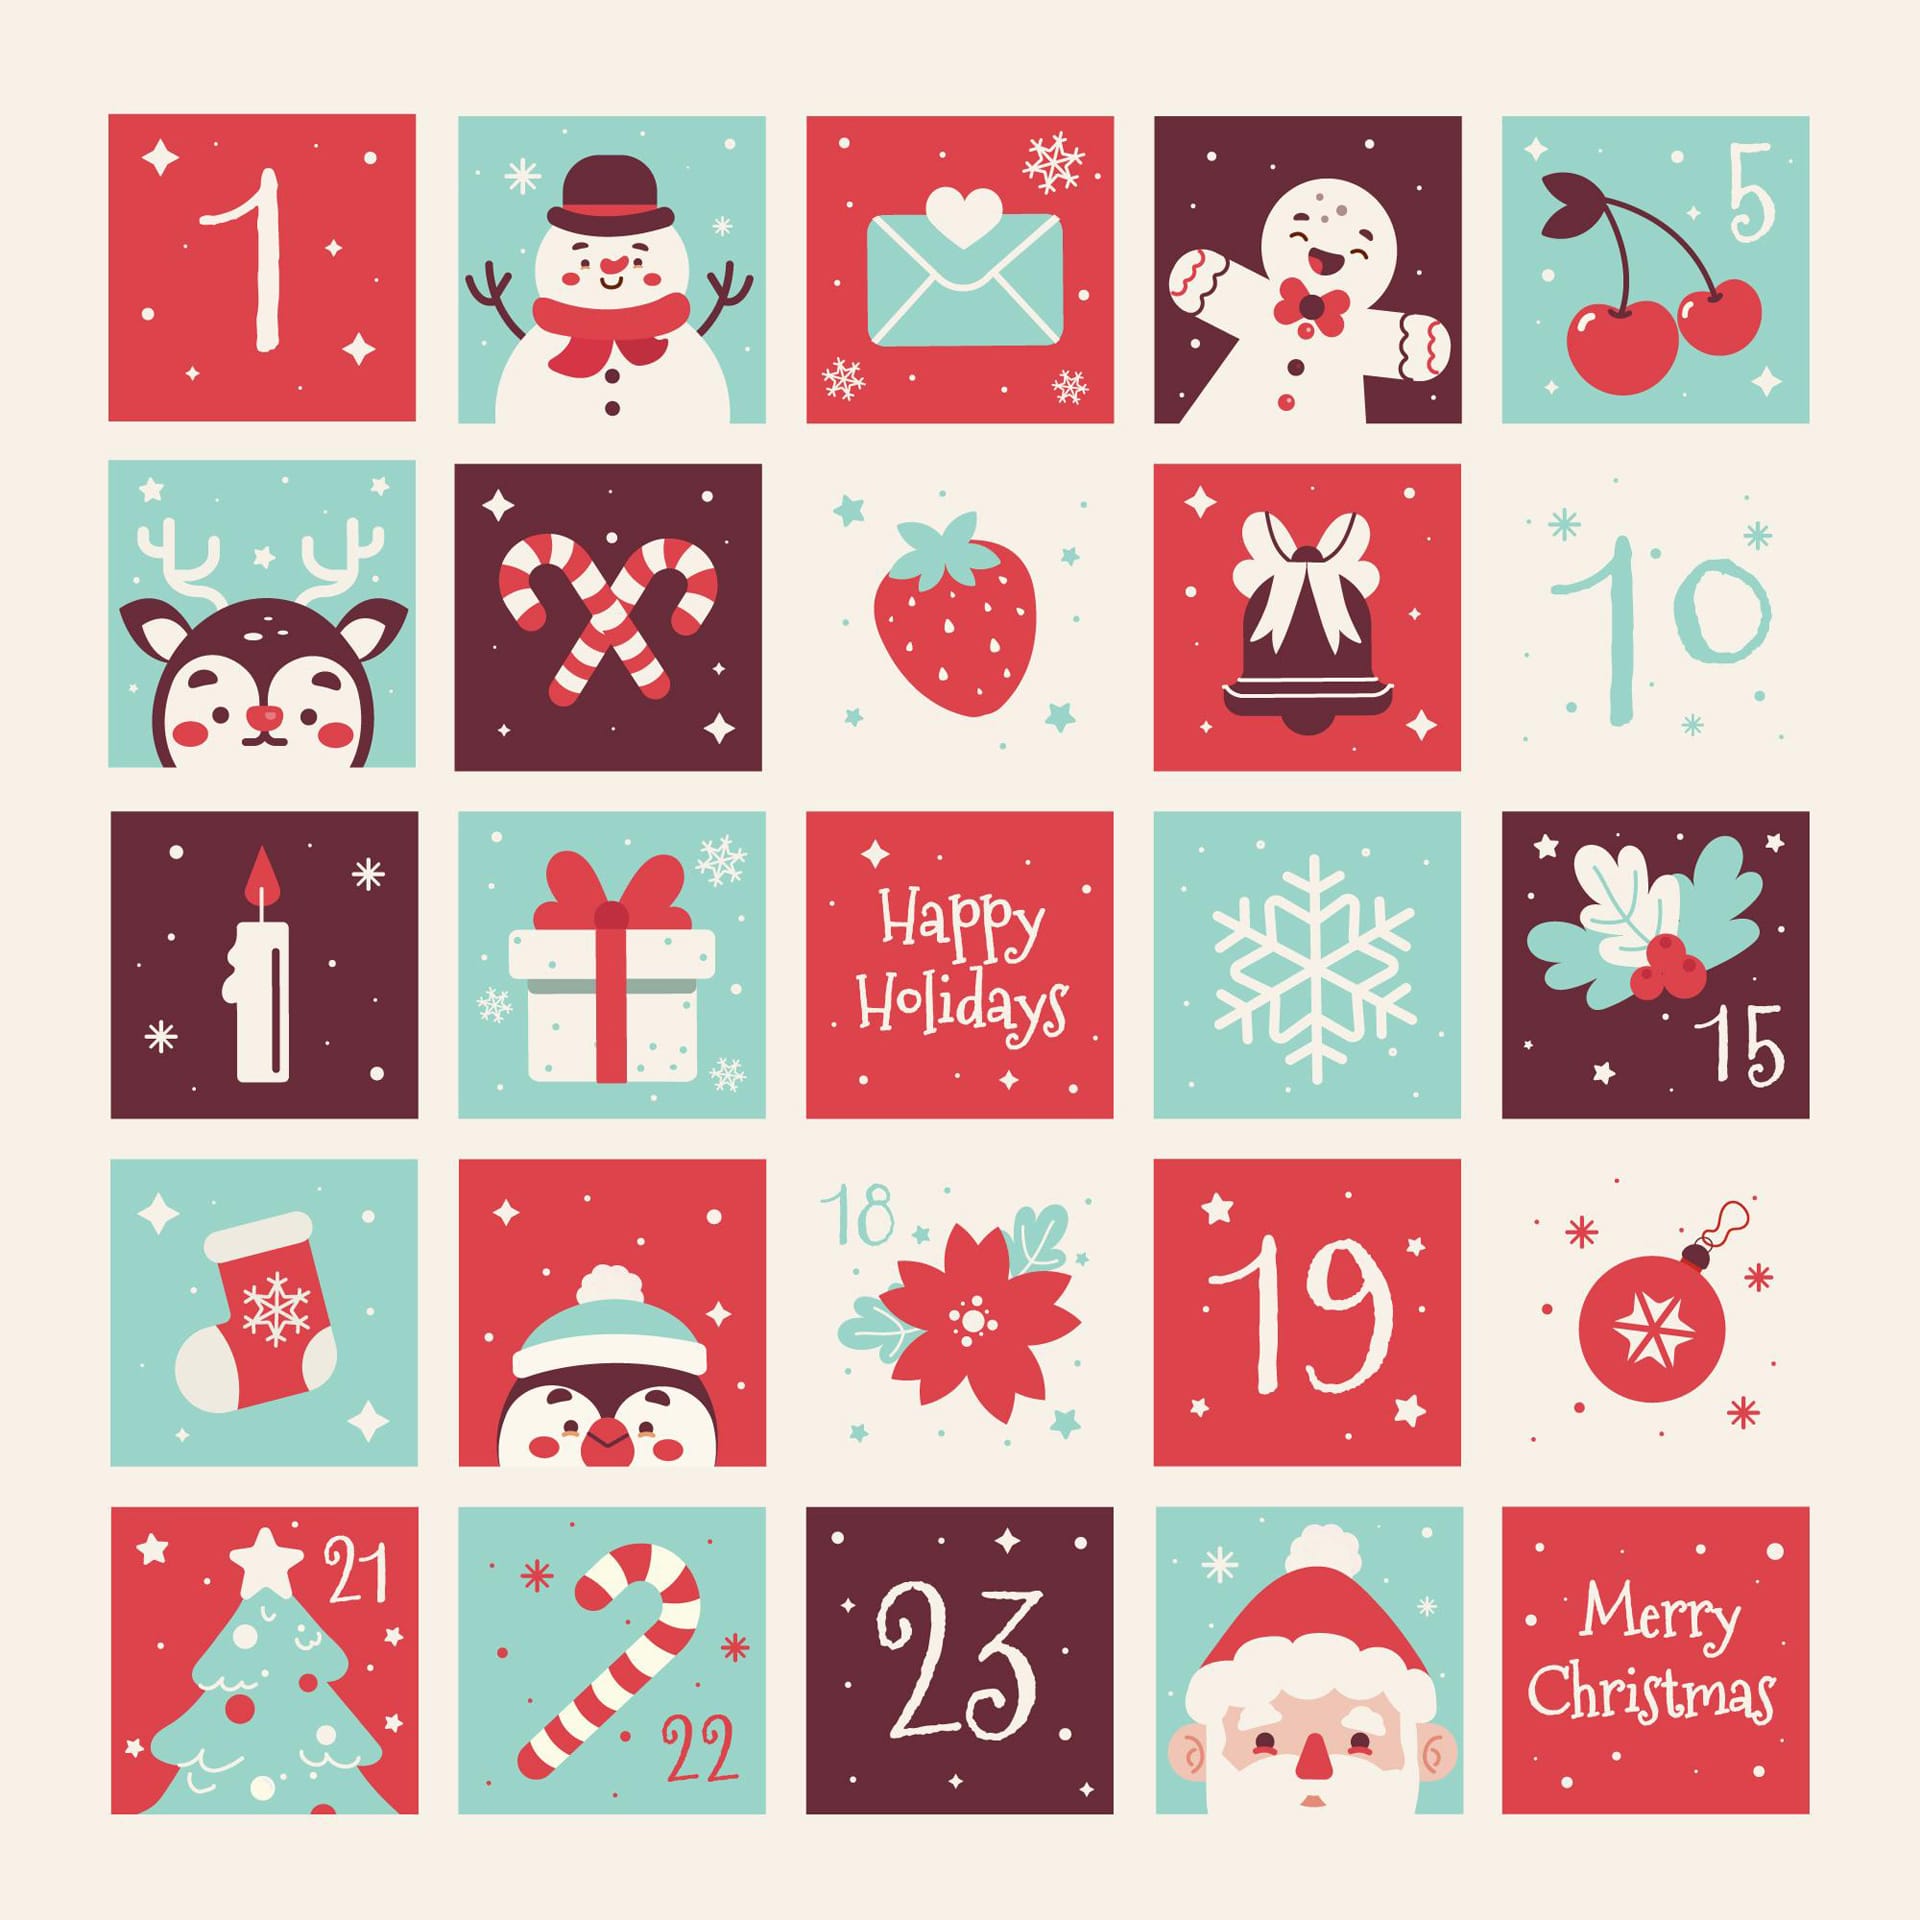 Christmas Calendar kmkm com